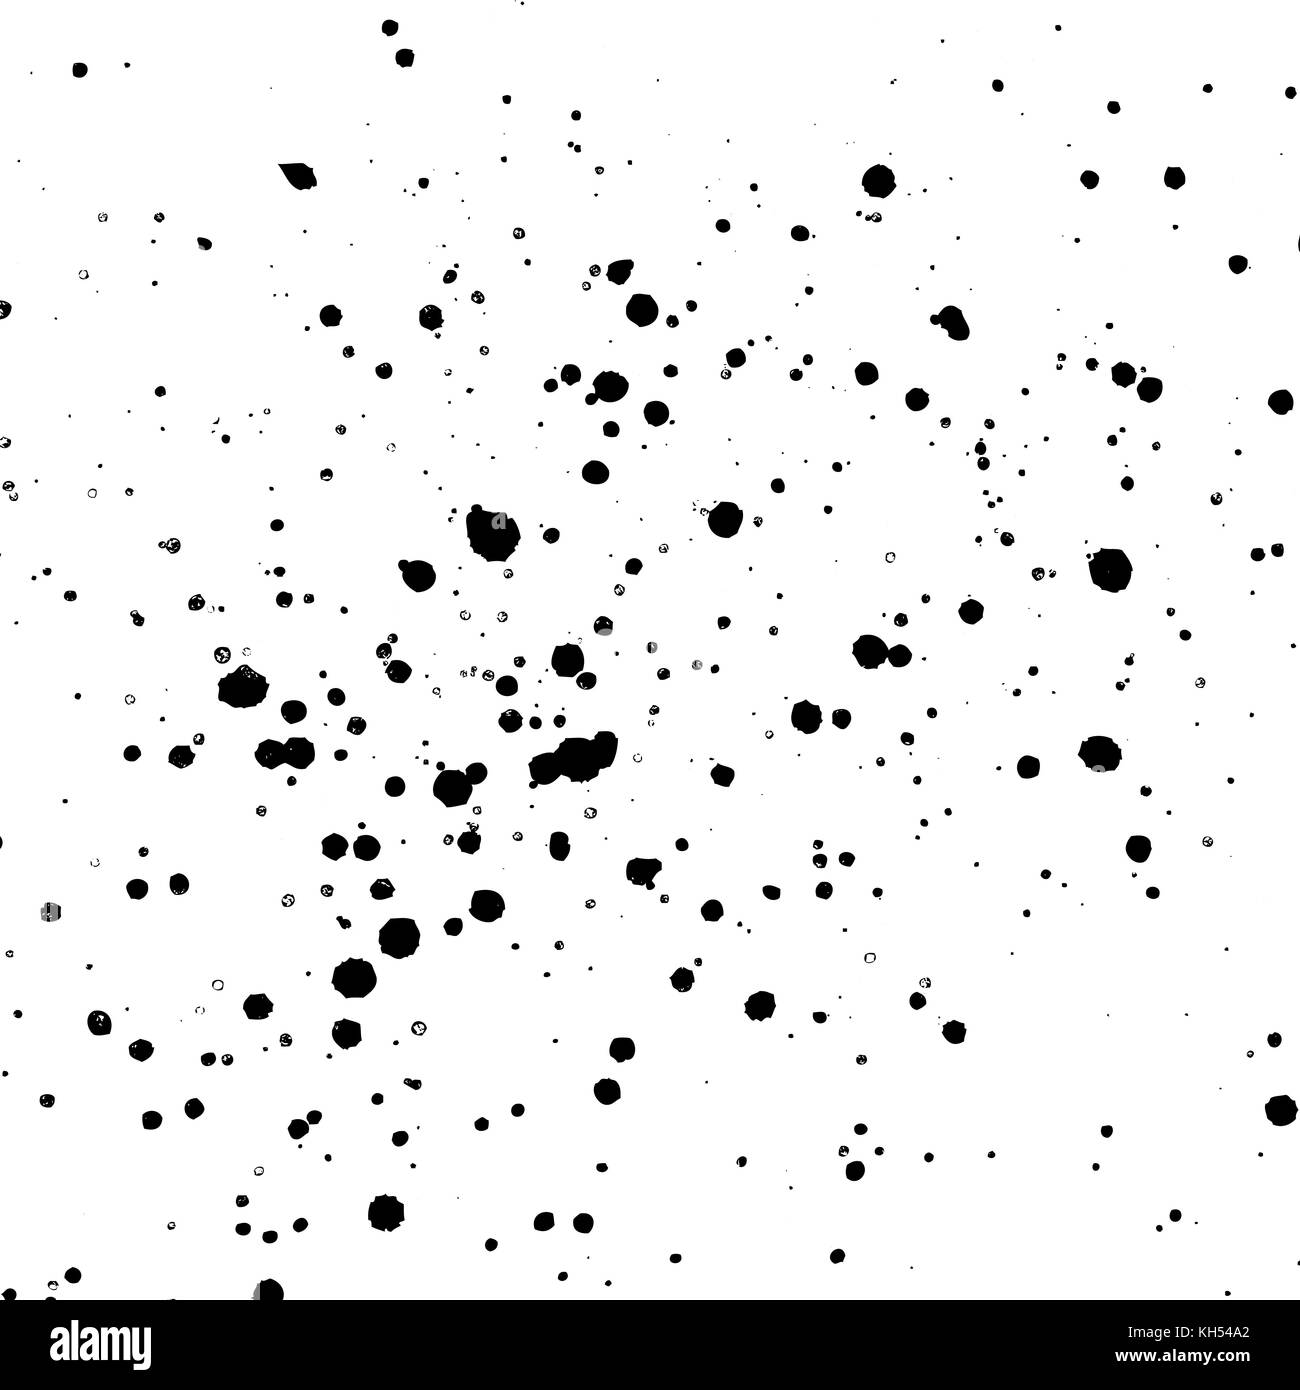 Vecteur d'encre noir monochrome et éclaboussures de peinture décorative éclaboussures texture réaliste isolé sur fond blanc Illustration de Vecteur